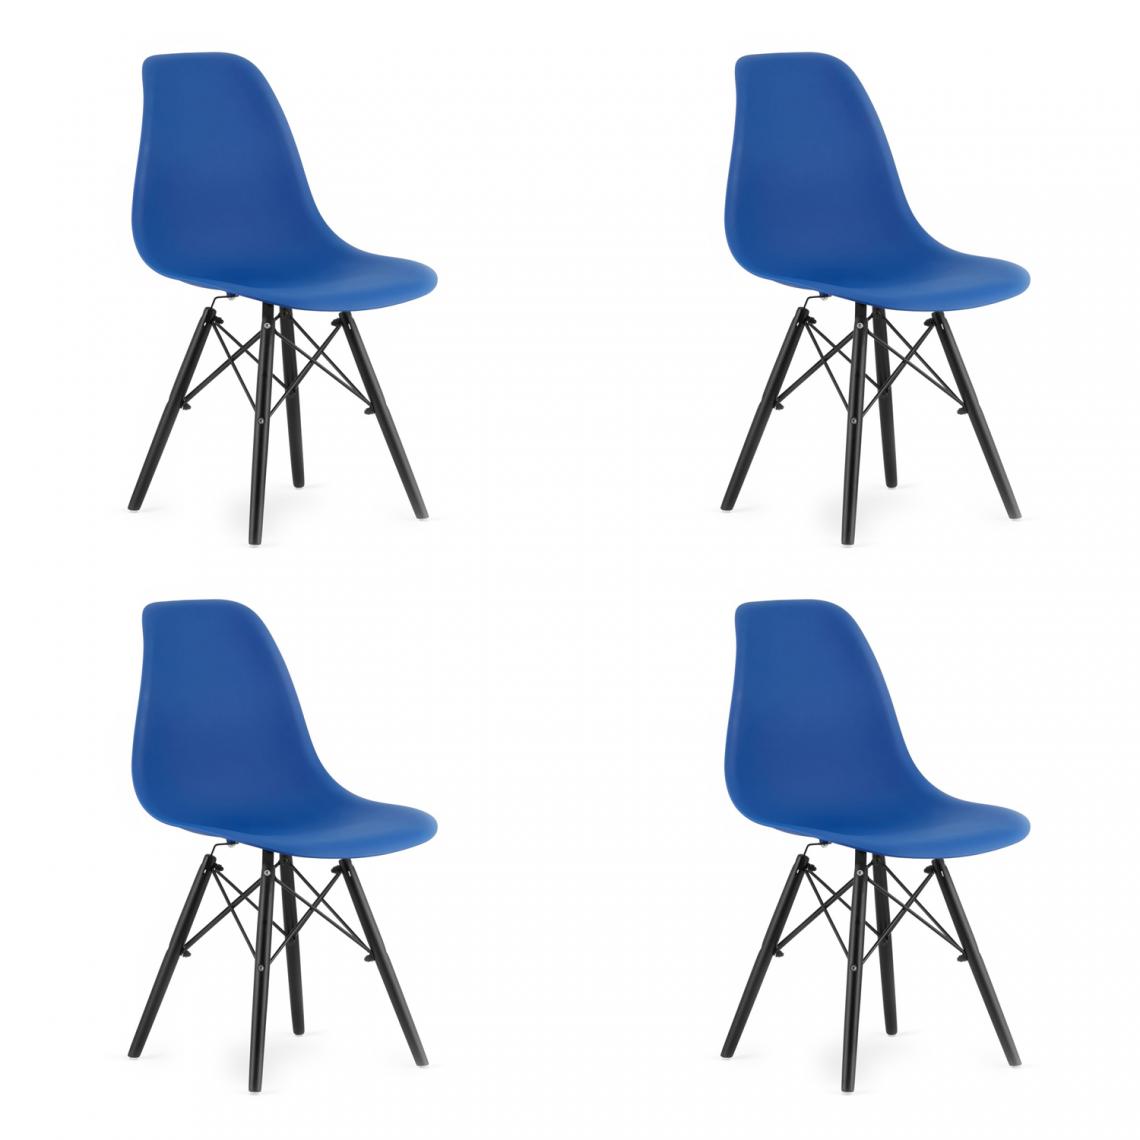 Hucoco - OSATA - Lot de 4 chaises en PP style moderne salon/cuisine - 81x54x46 cm - Chaise de salle à manger - Bleu - Chaises